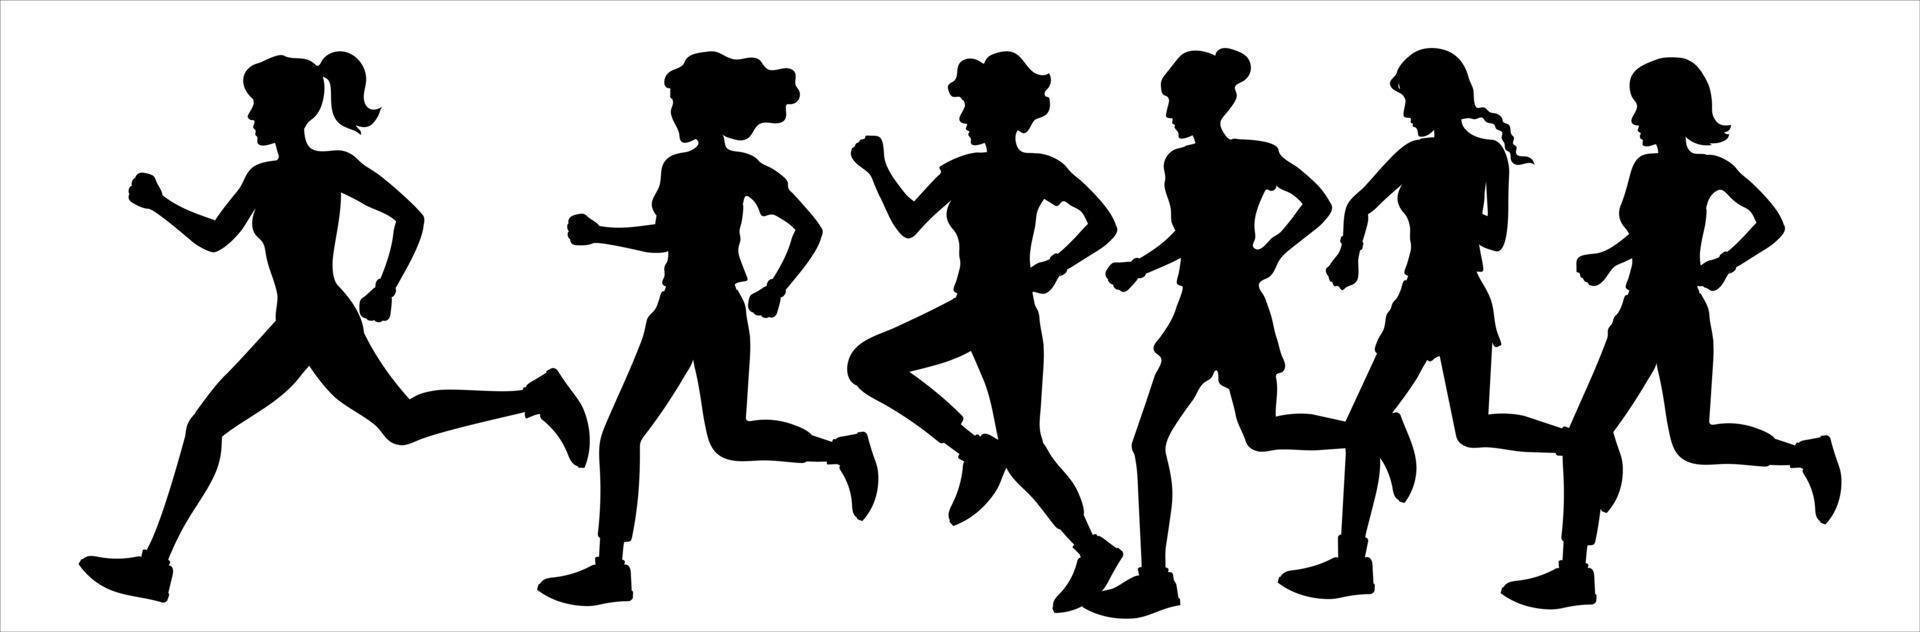 les filles et les femmes courent dans un marathon, font du jogging. silhouettes noires sur fond blanc. illustration du sport et du mode de vie sain. vecteur